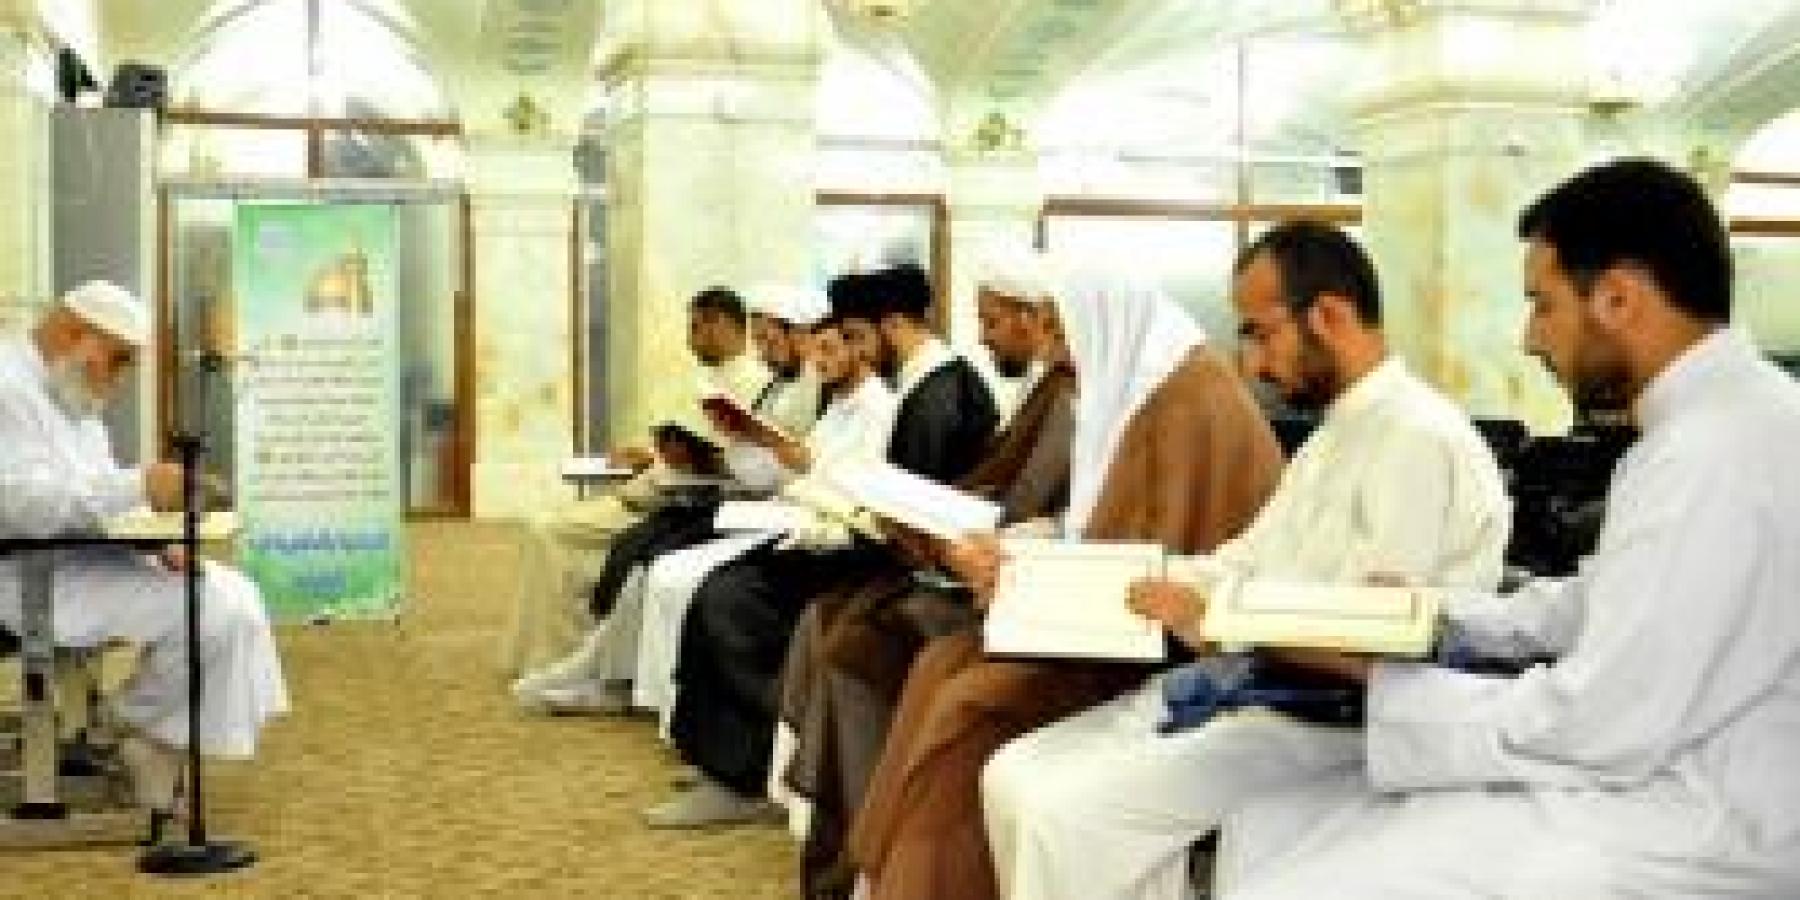 العتبة العلوية المقدسة ترعى محفلا قرآنياً إحتفاءً بتخرج أربع دورات قرآنية متخصصة